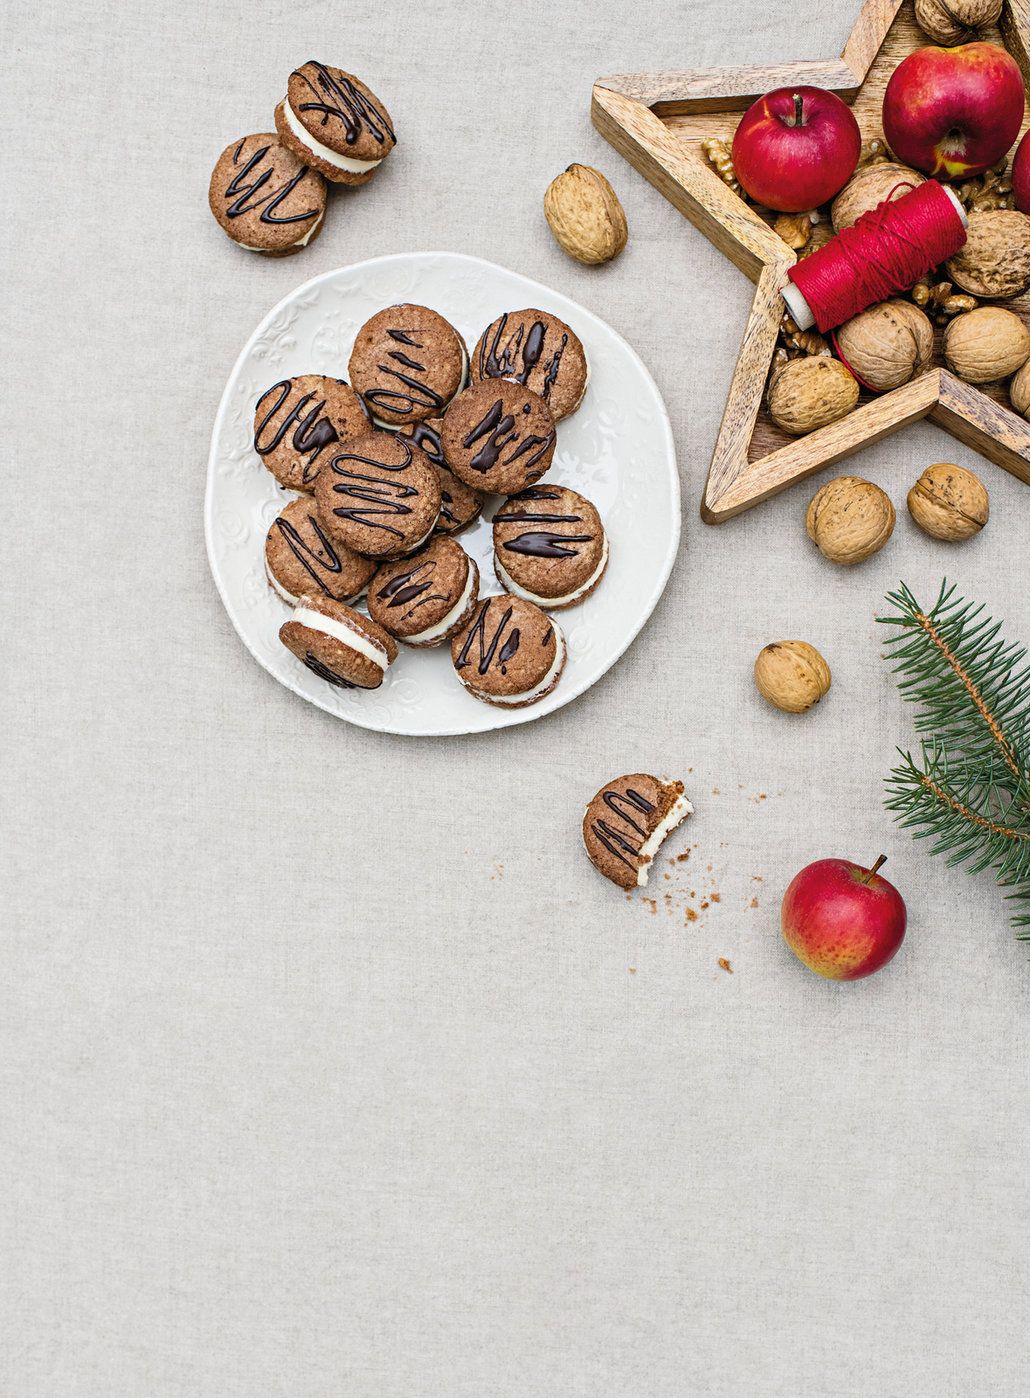 Jestliže ořechové cukroví patří k vašim oblíbeným, zkuste bezlepková ořechová kolečka s vanilkovým krémem